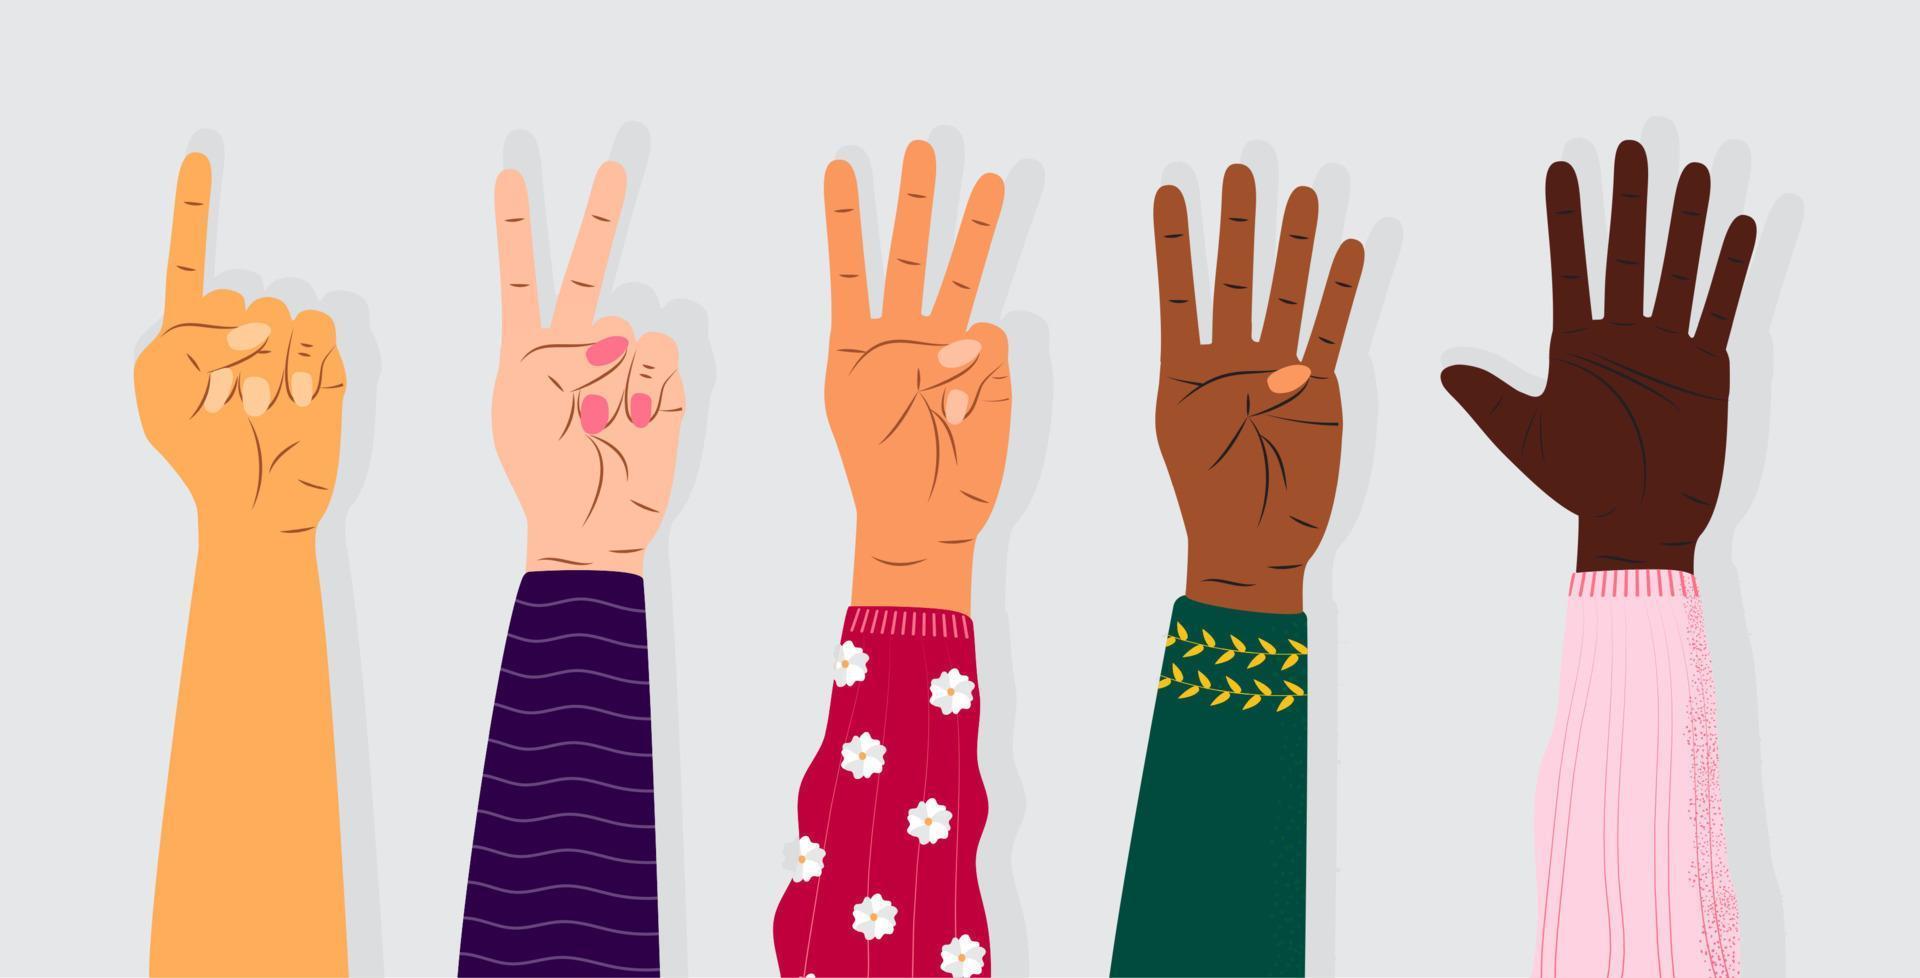 vecteur de signe de geste de la main. ensemble de compter sur les doigts. cinq icônes de poignet avec nombre de doigts en style cartoon. mains de personnes de races différentes.